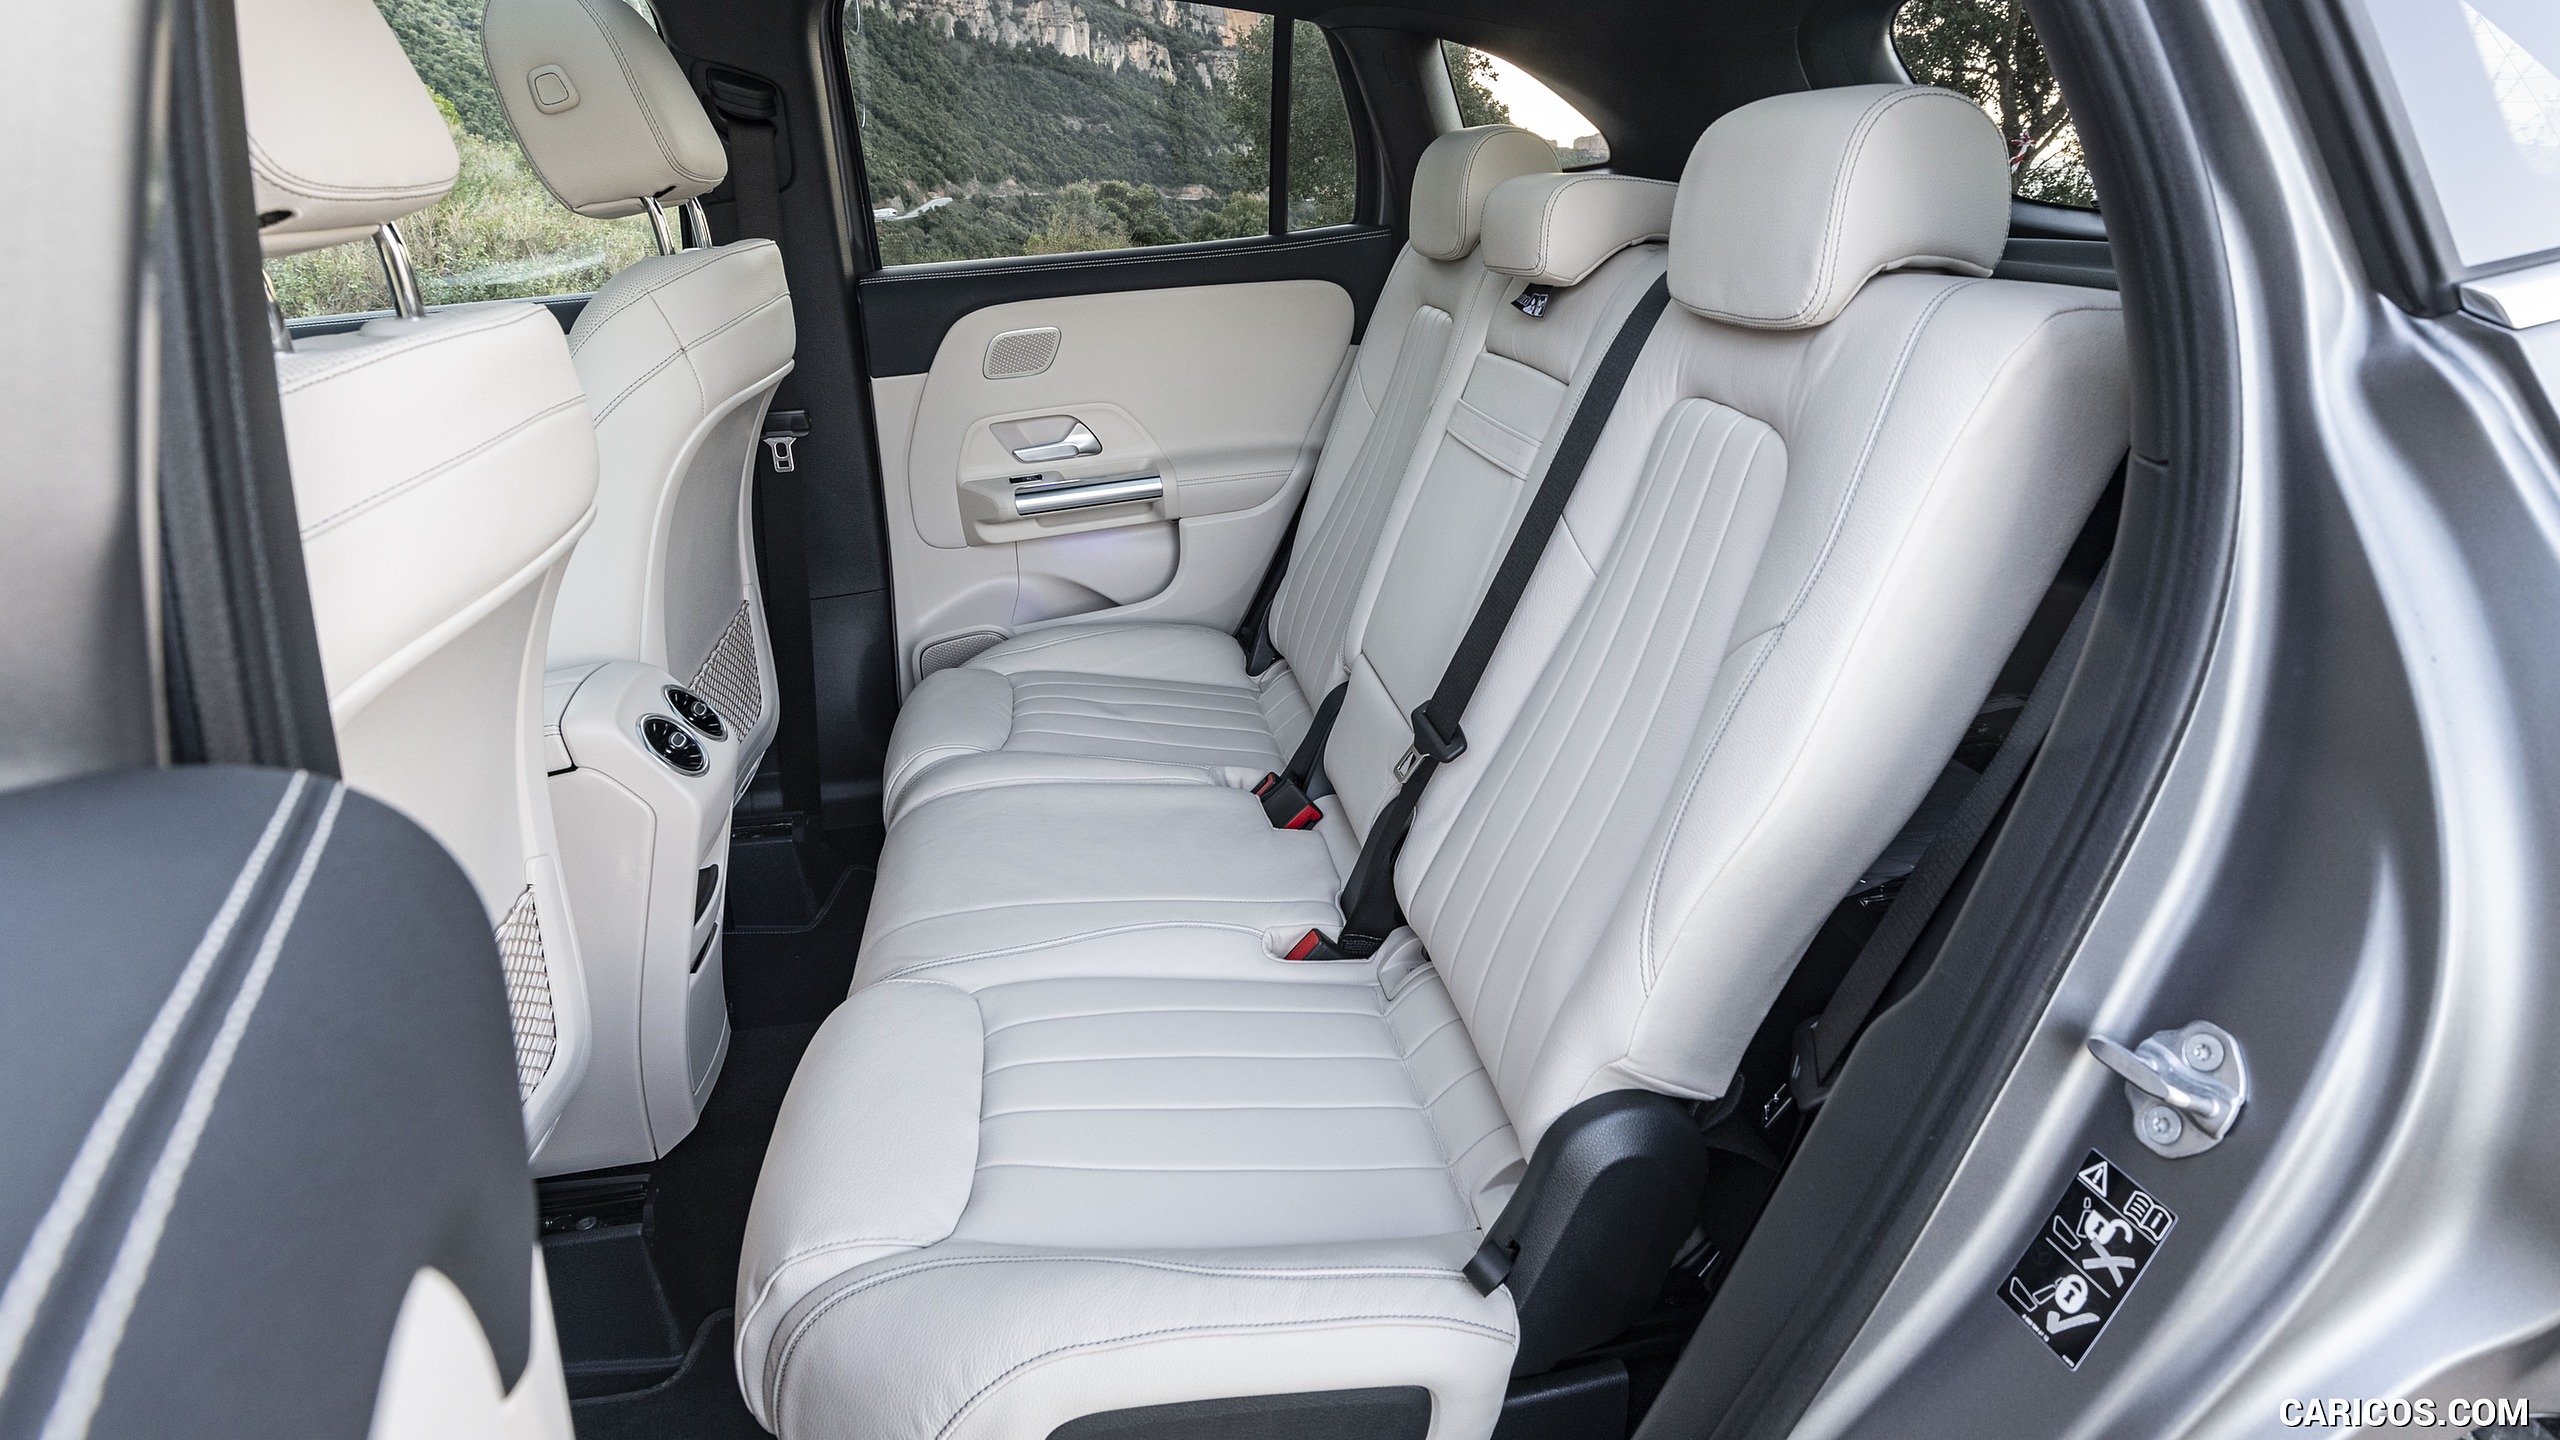 2021 Mercedes-Benz GLA - Interior, Rear Seats, #112 of 280